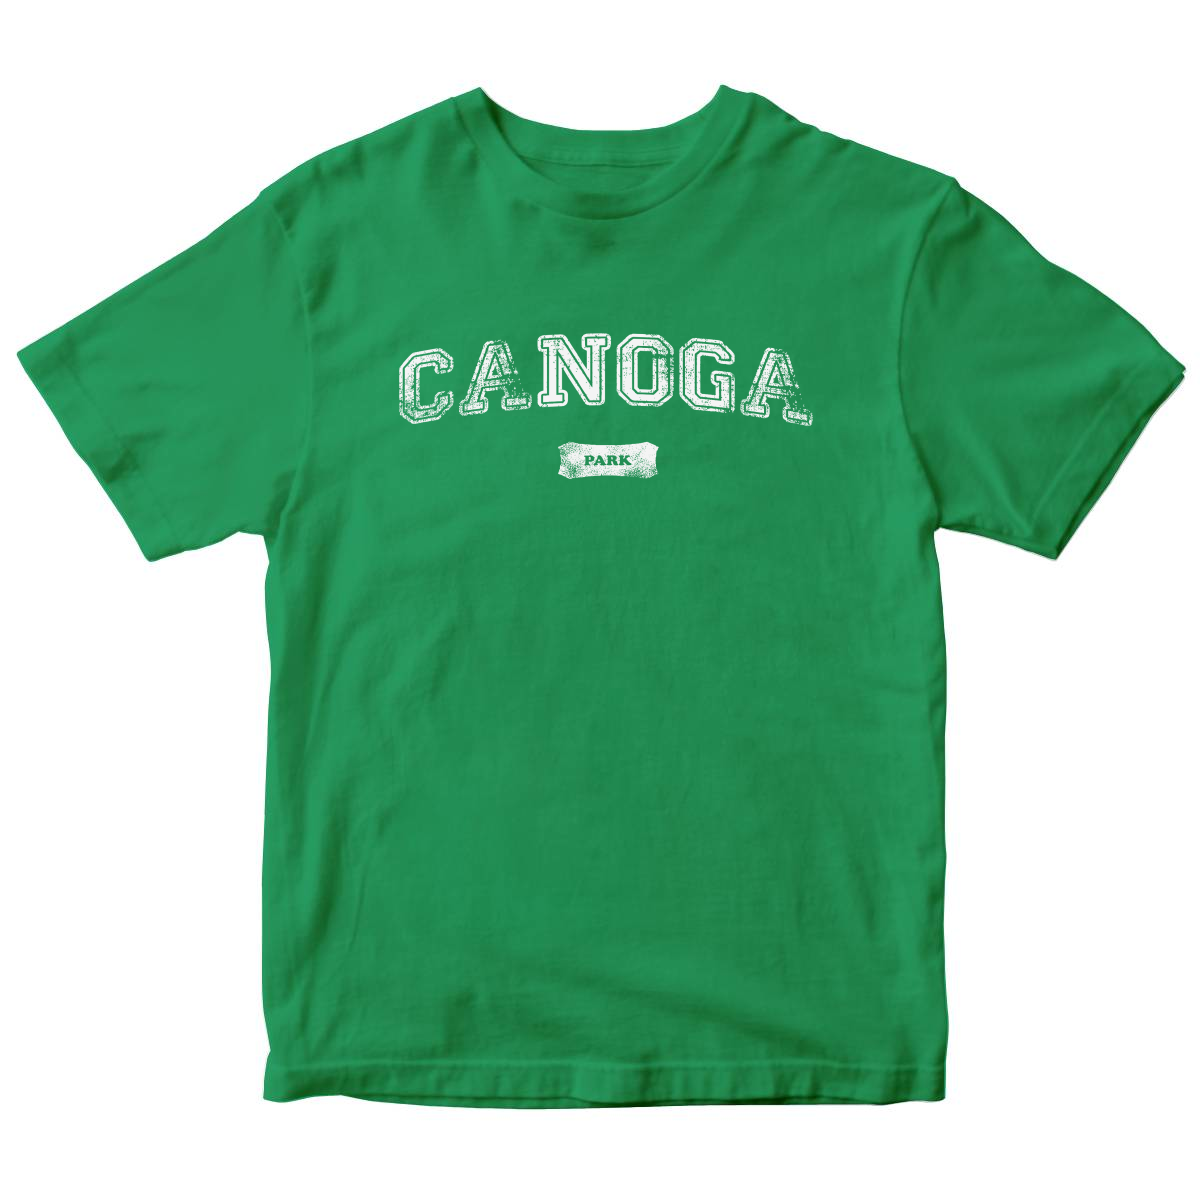 Canoga Park Represent Kids T-shirt | Green